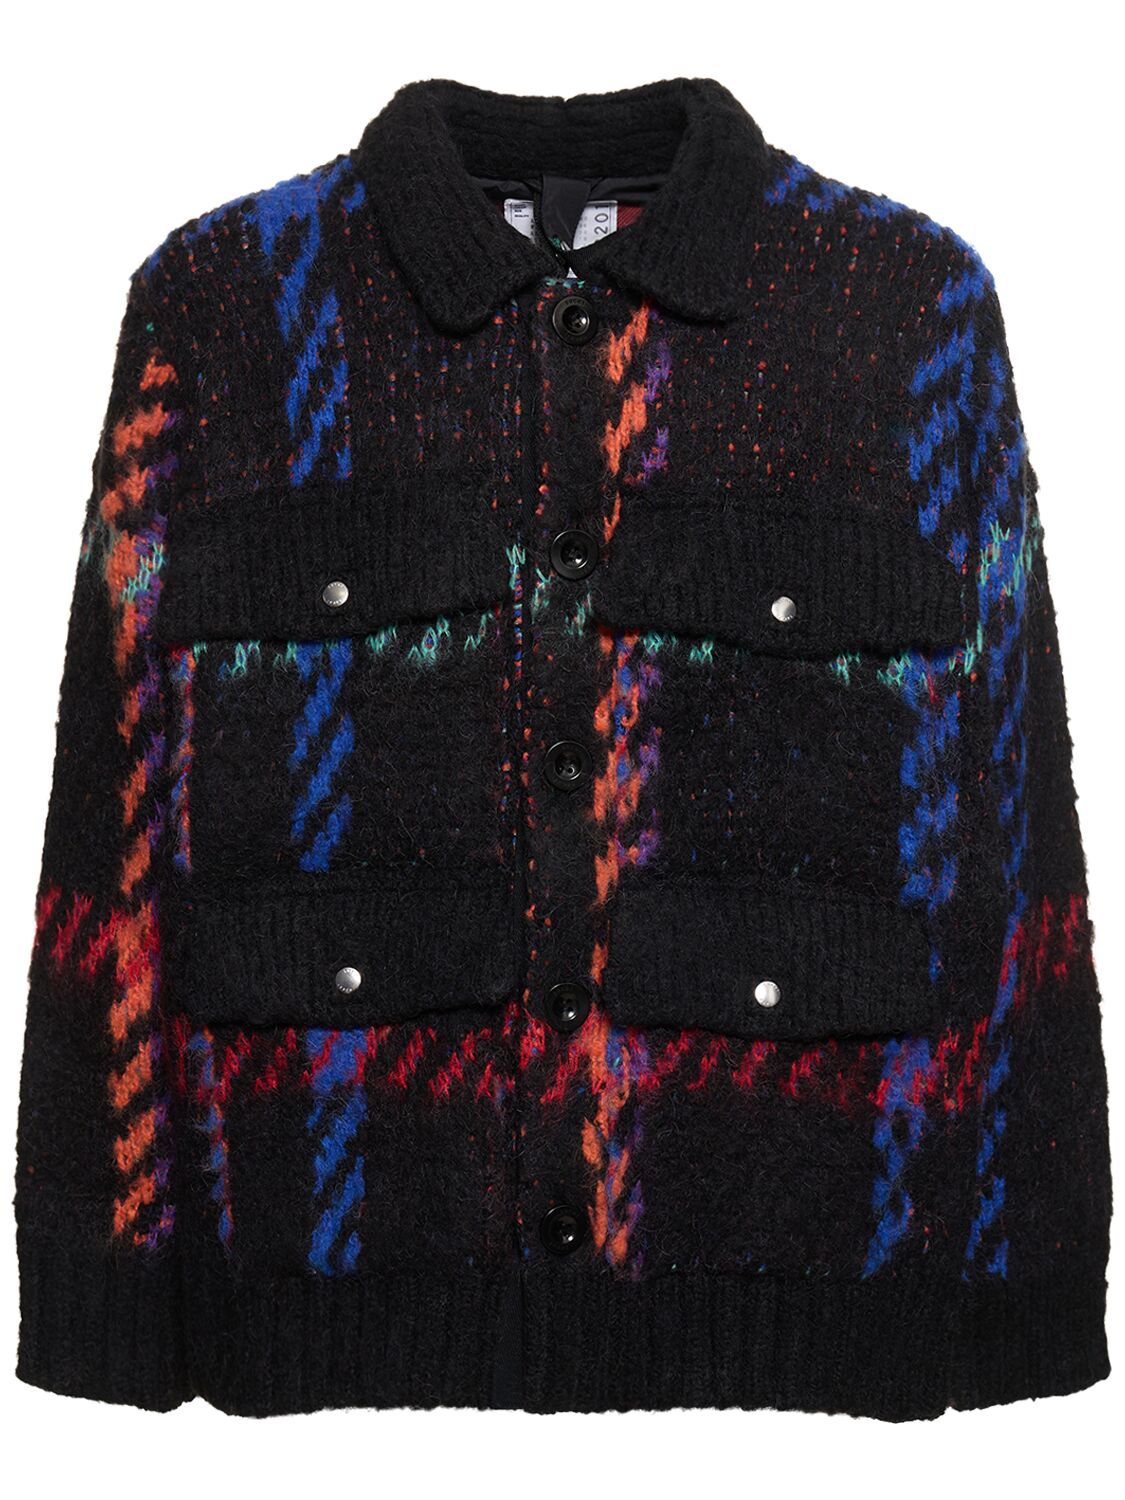 Jacquard Knit Jacket – MEN > CLOTHING > JACKETS